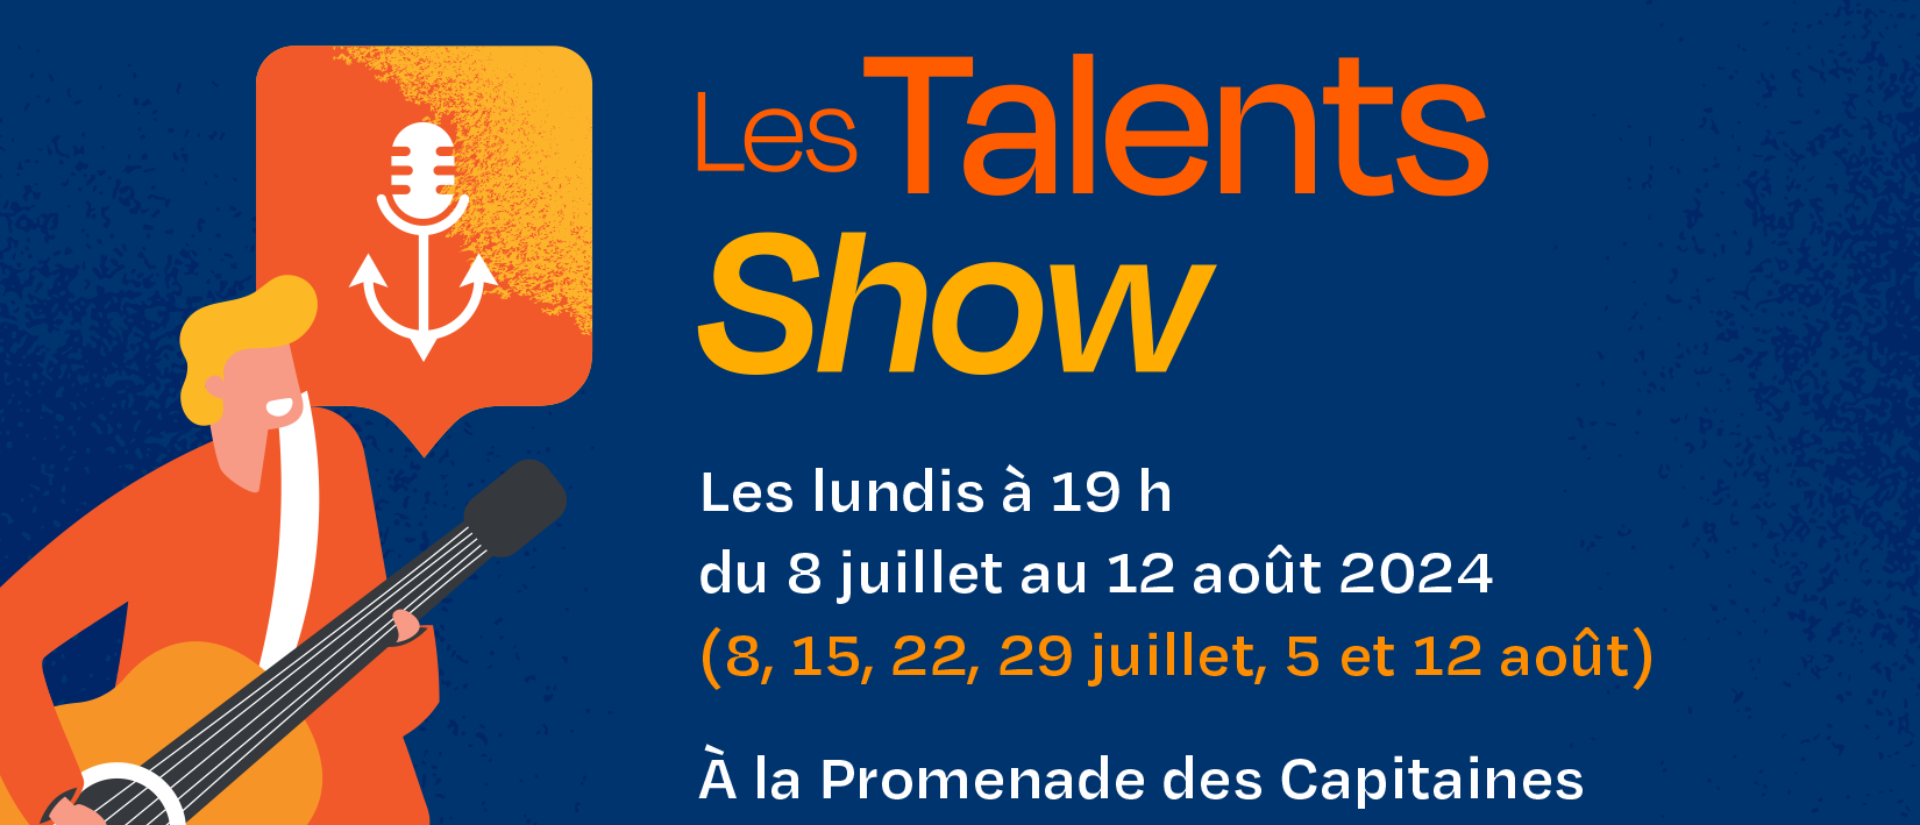 Les Talents Show